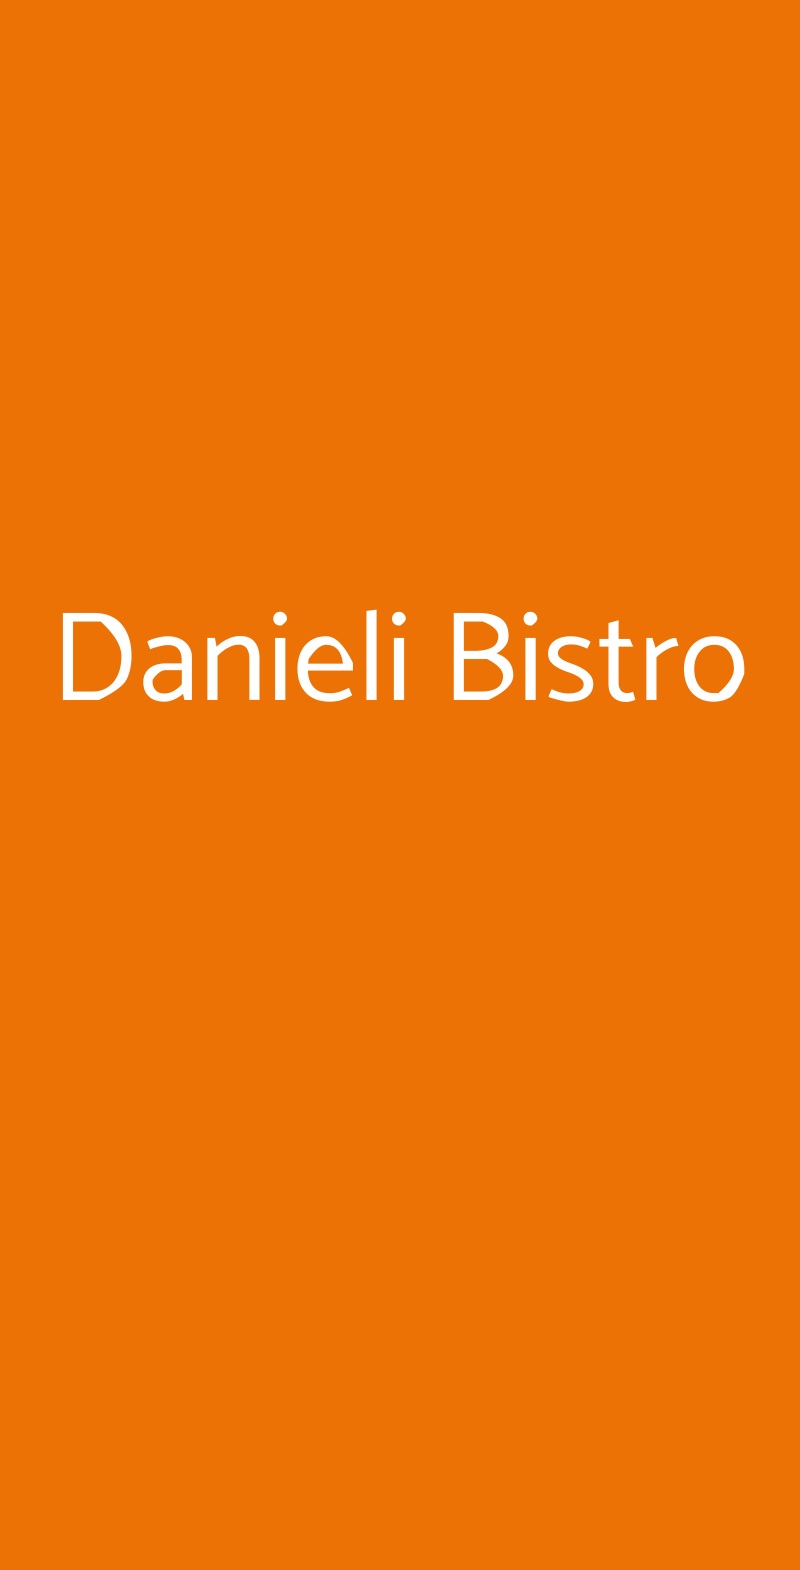 Danieli Bistro Venezia menù 1 pagina